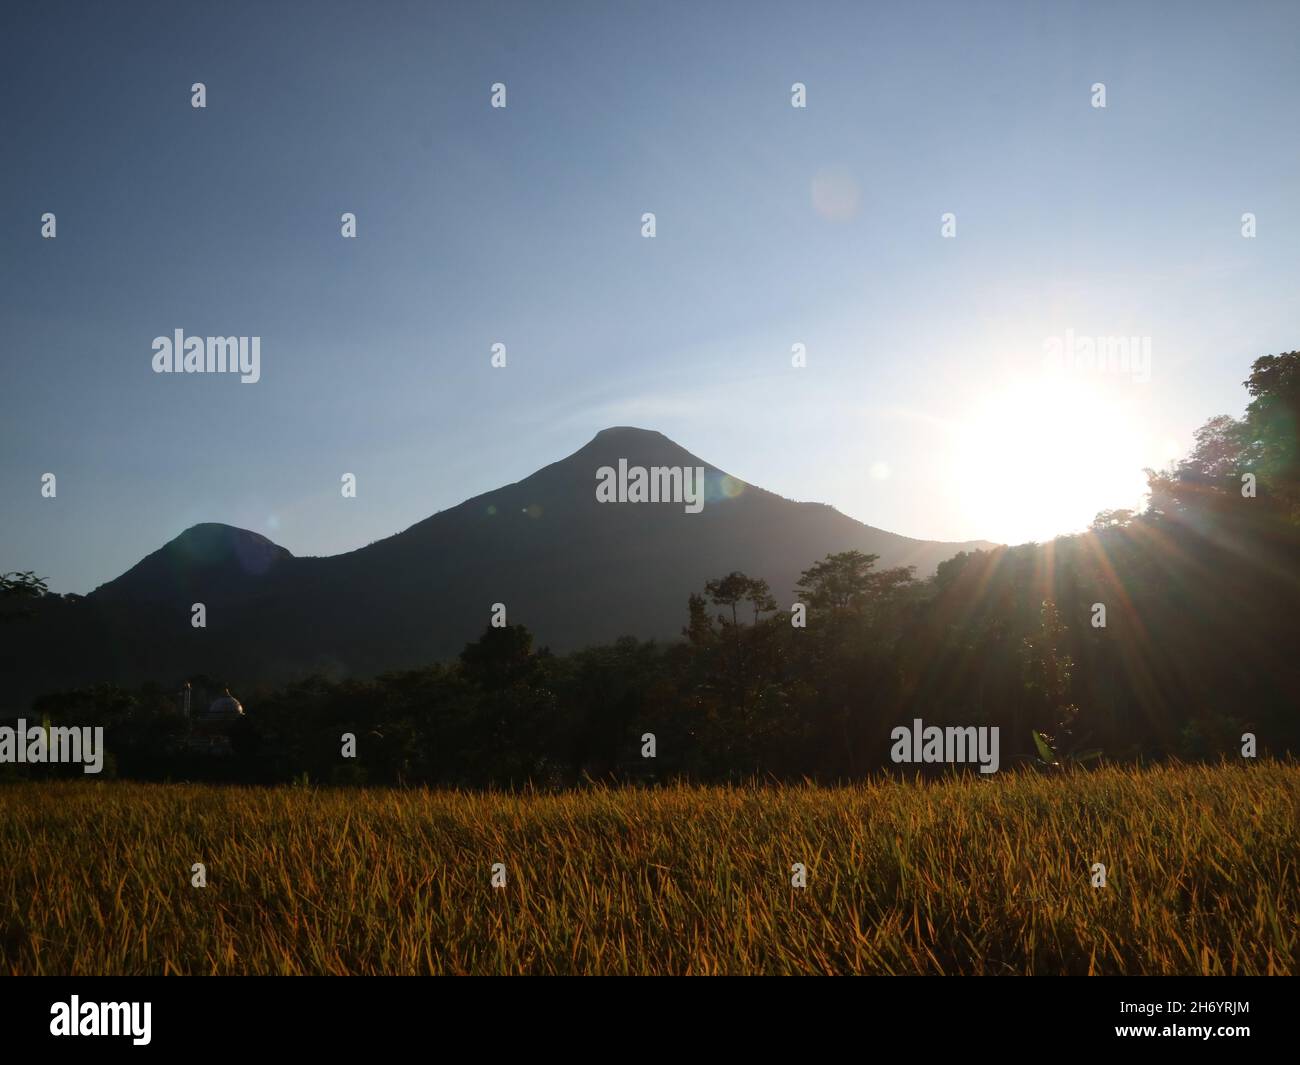 MOJOKERO, INDONÉSIE - juin 06, 2019: Belle vue sur le champ de riz, les arbres et les montagnes avec des nuages blancs dans le ciel bleu Banque D'Images